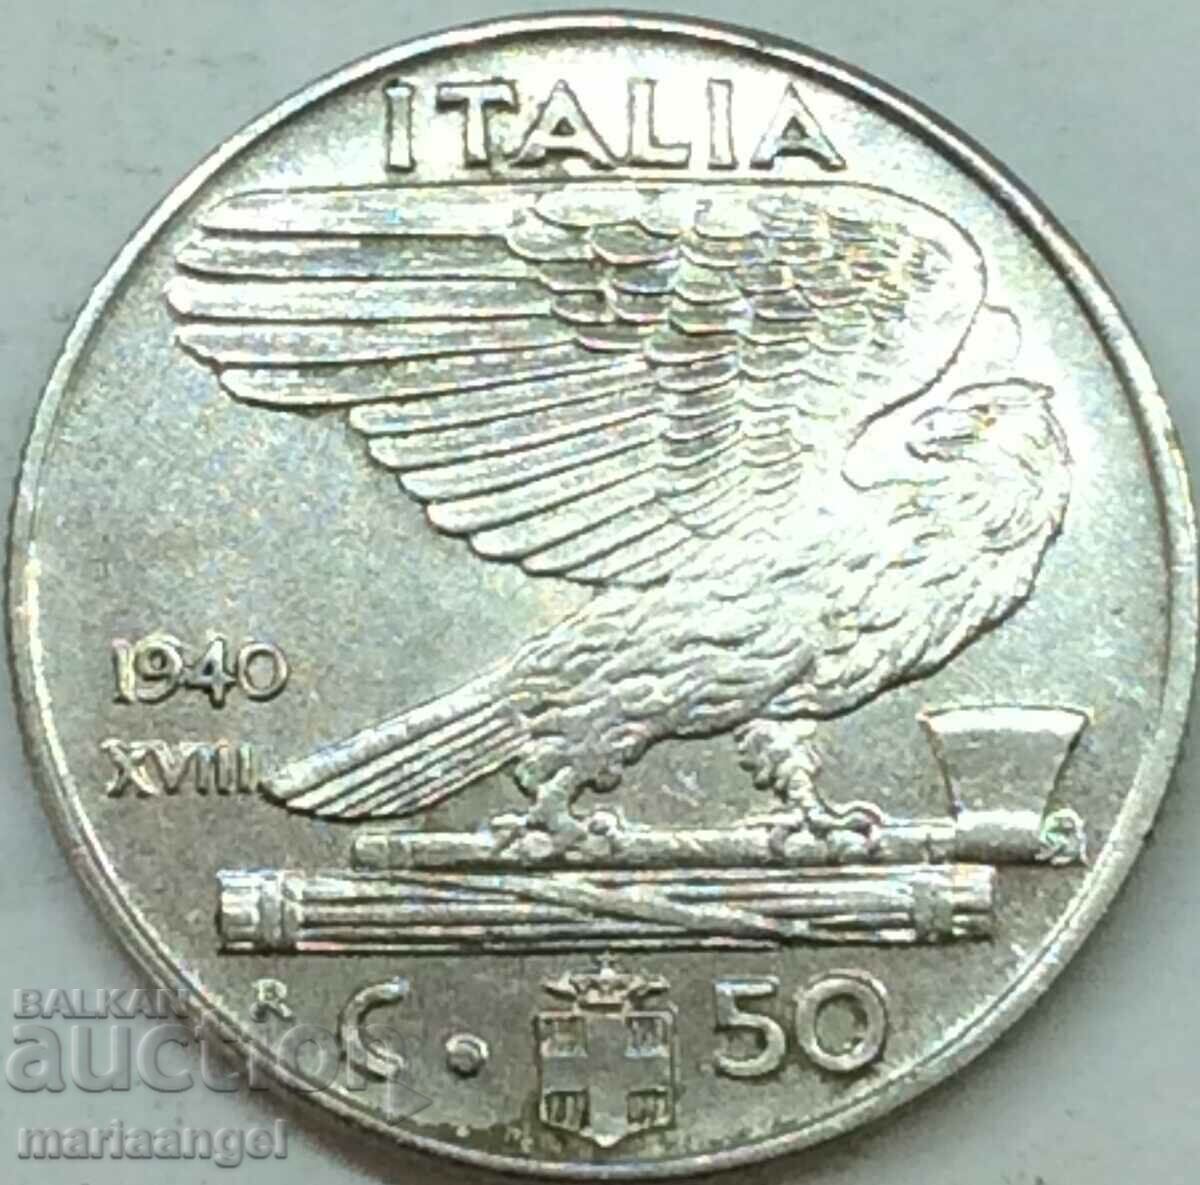 50 centesimi 1940 Italia Vultur - fascism magnetic